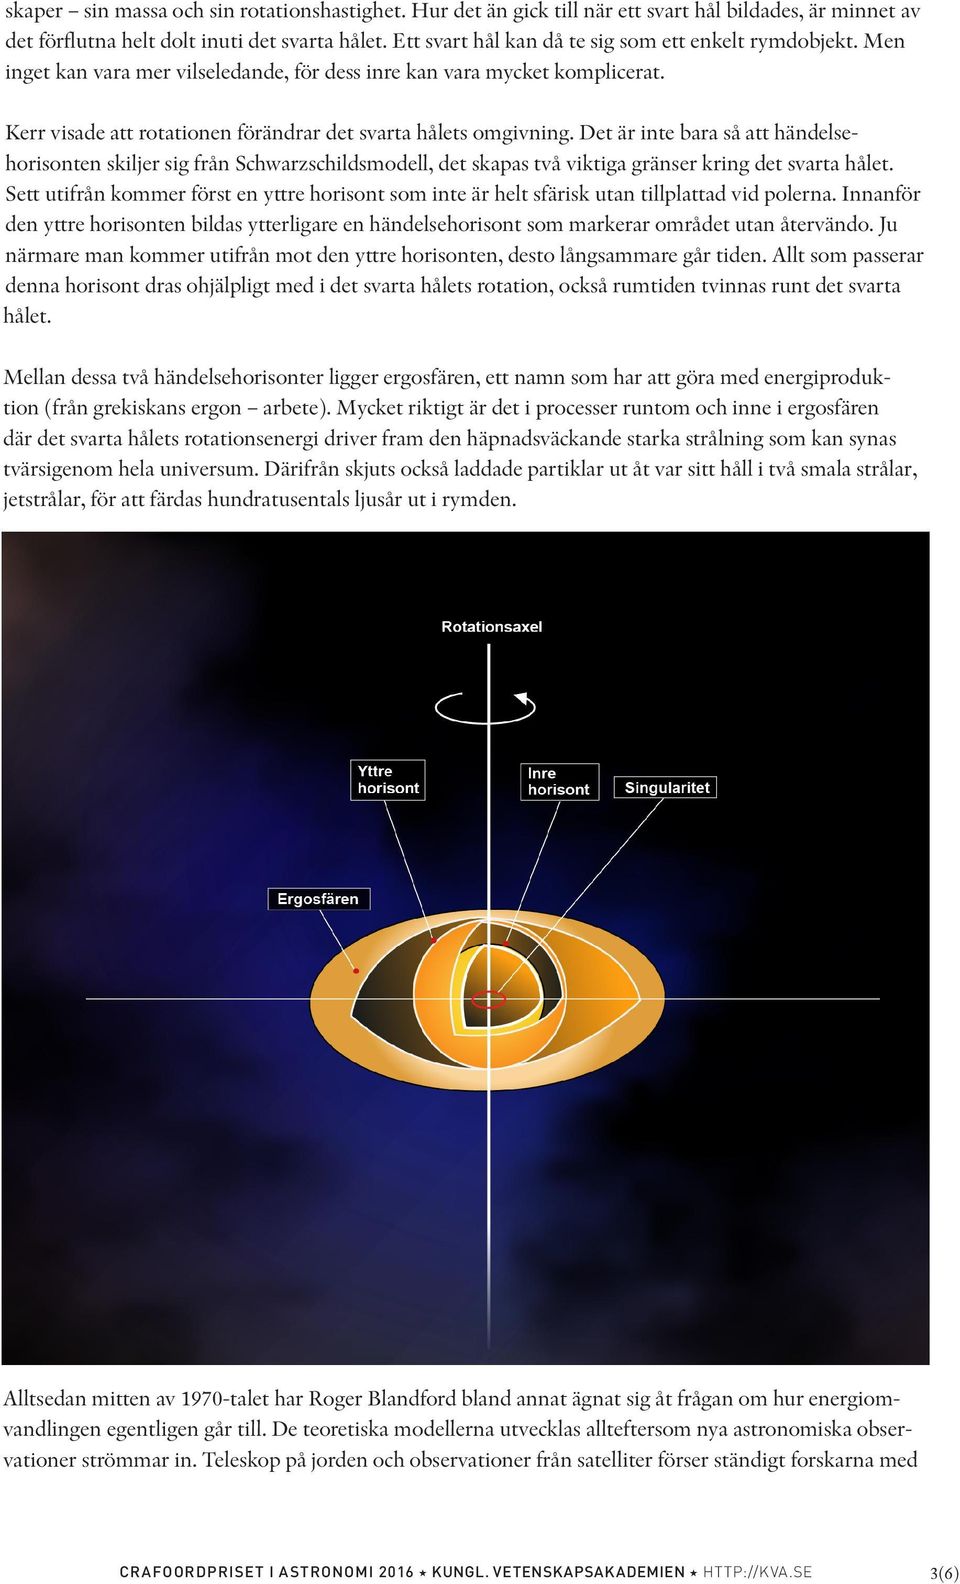 Det är inte bara så att händelsehorisonten skiljer sig från Schwarzschildsmodell, det skapas två viktiga gränser kring det svarta hålet.